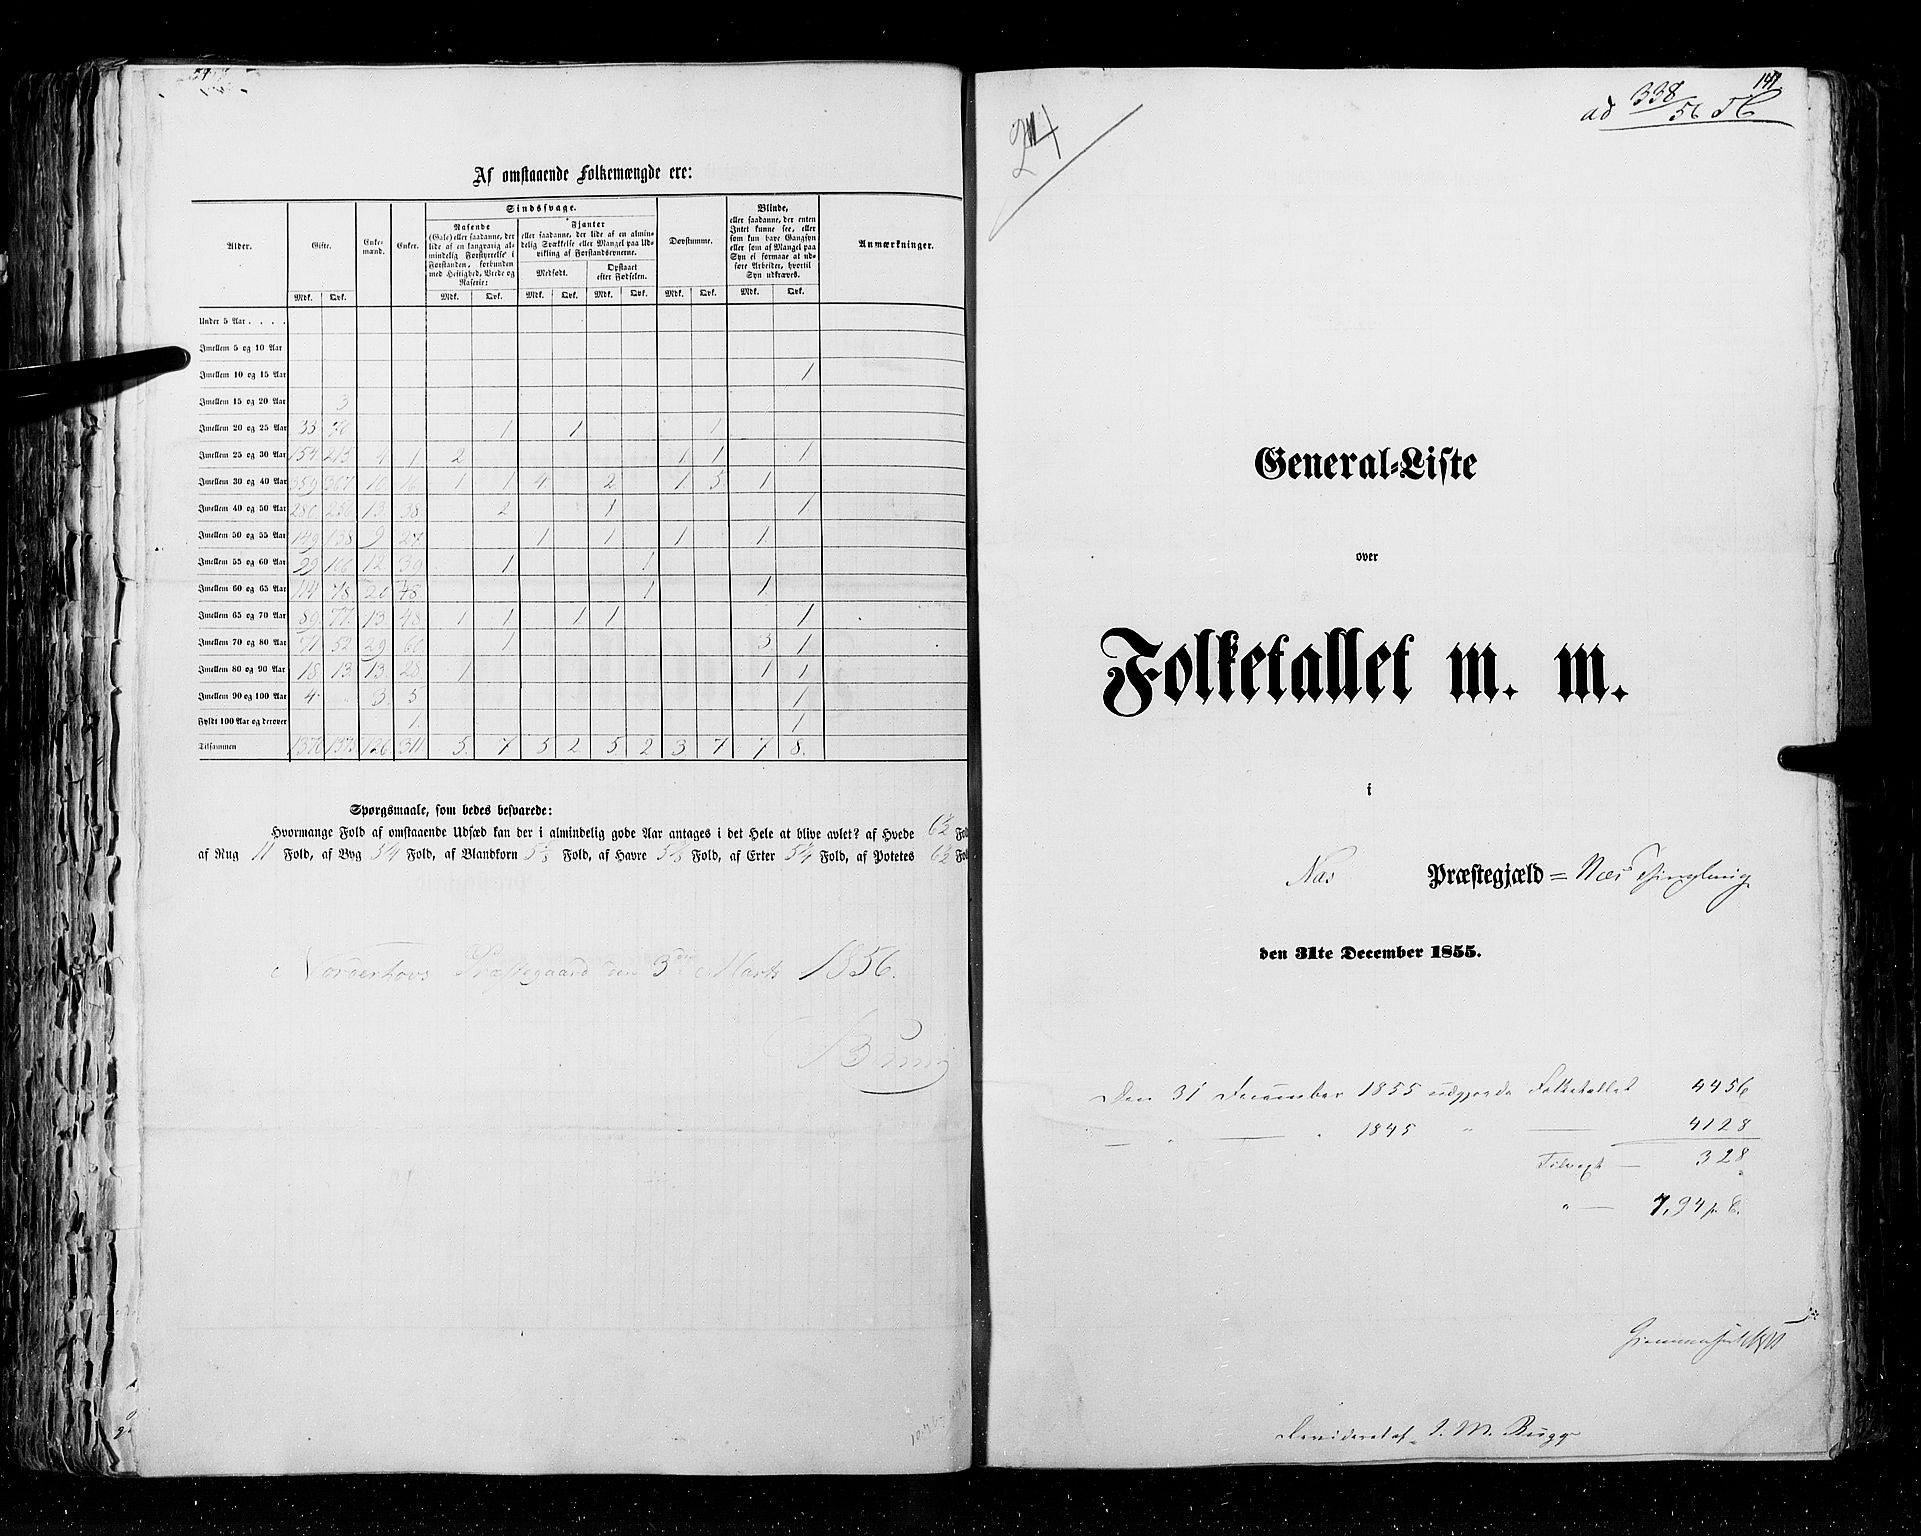 RA, Census 1855, vol. 2: Kristians amt, Buskerud amt og Jarlsberg og Larvik amt, 1855, p. 141